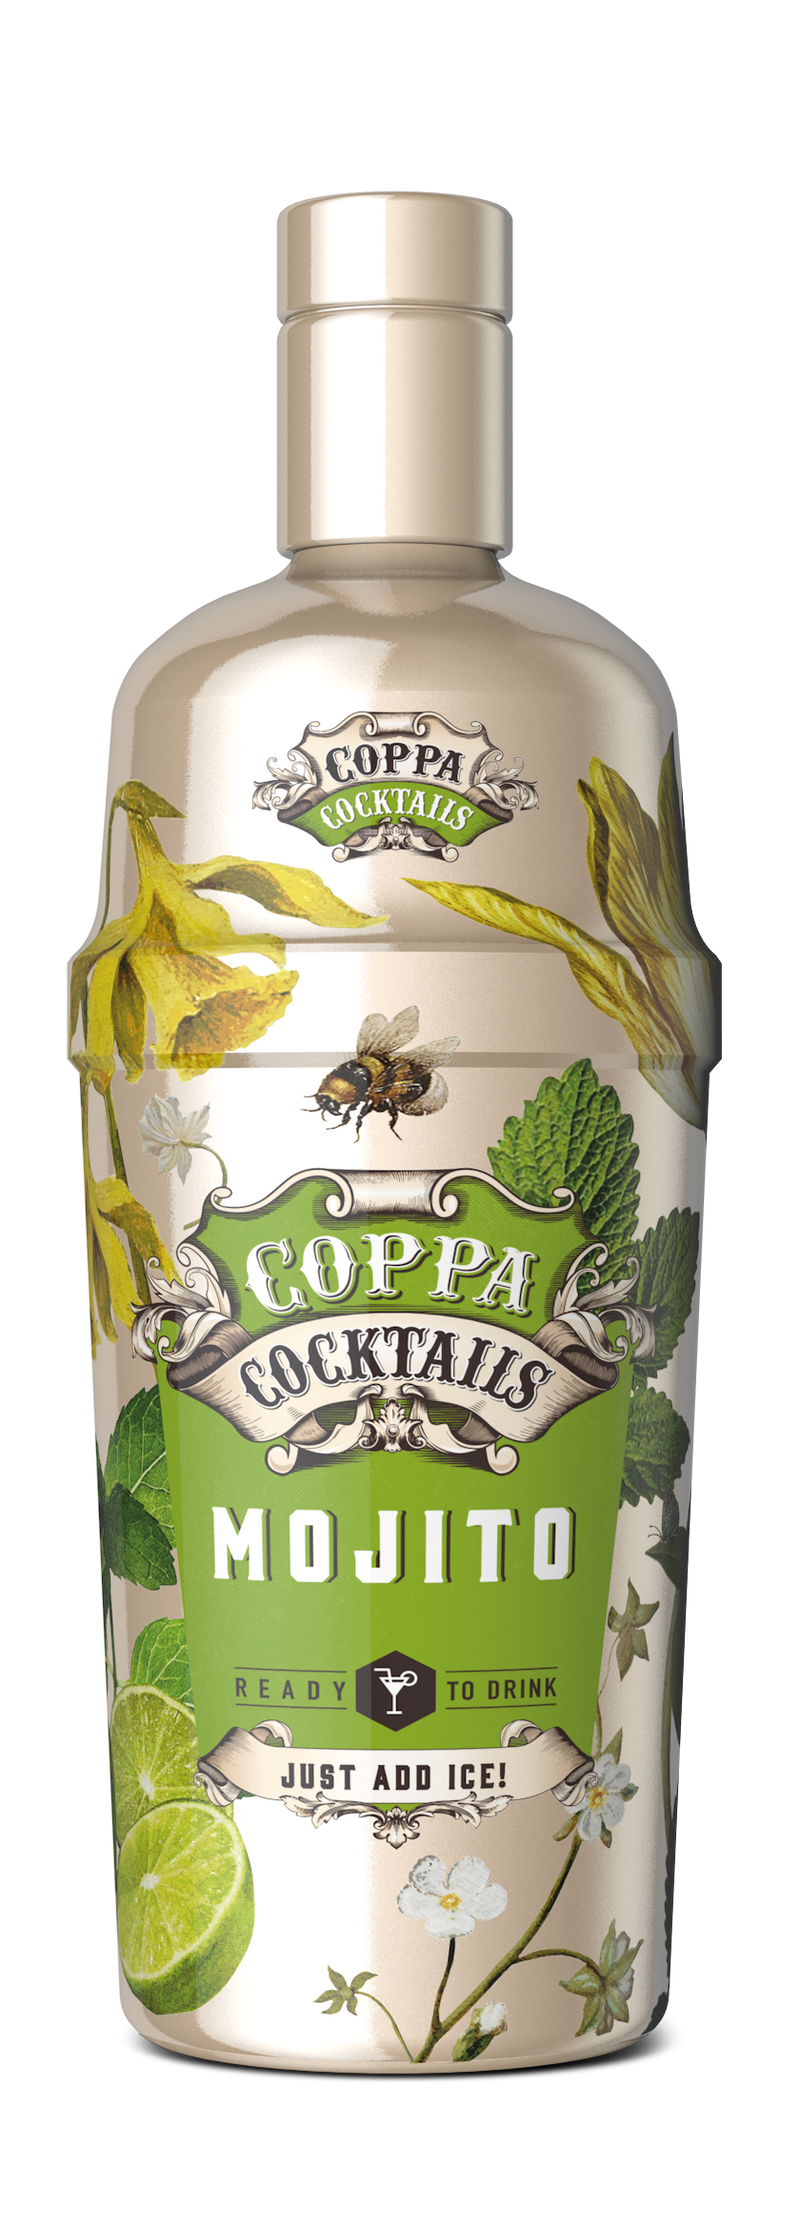 COPPA Mojito - 700ml